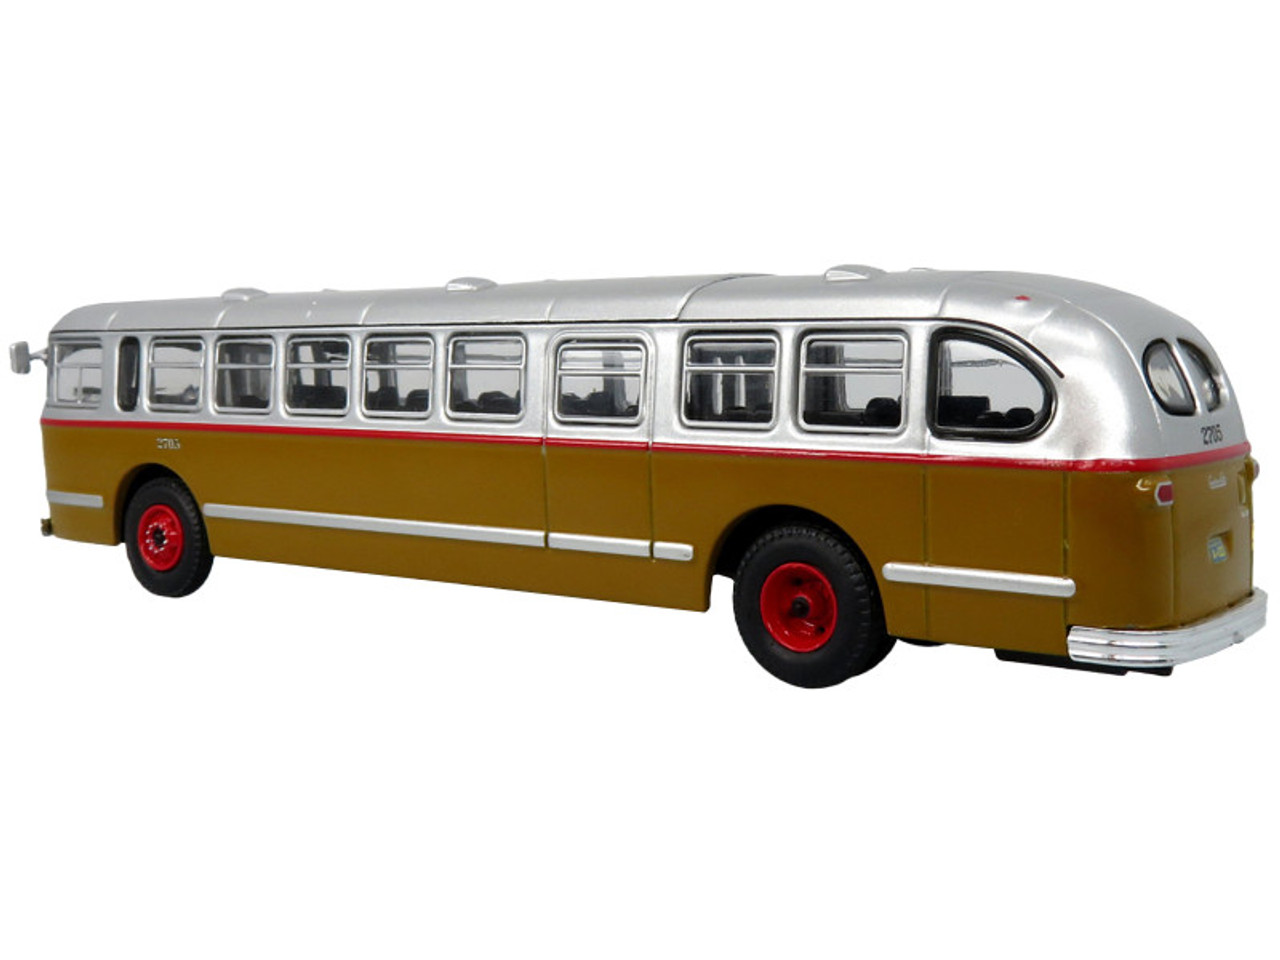 1952 CCF-Brill CD-44 Transit Bus STM (Societe de Transport de Montreal) "S-Laurent" "Vintage Bus & Motorcoach Collection" 1/87 (HO) Diecast Model by Iconic Replicas